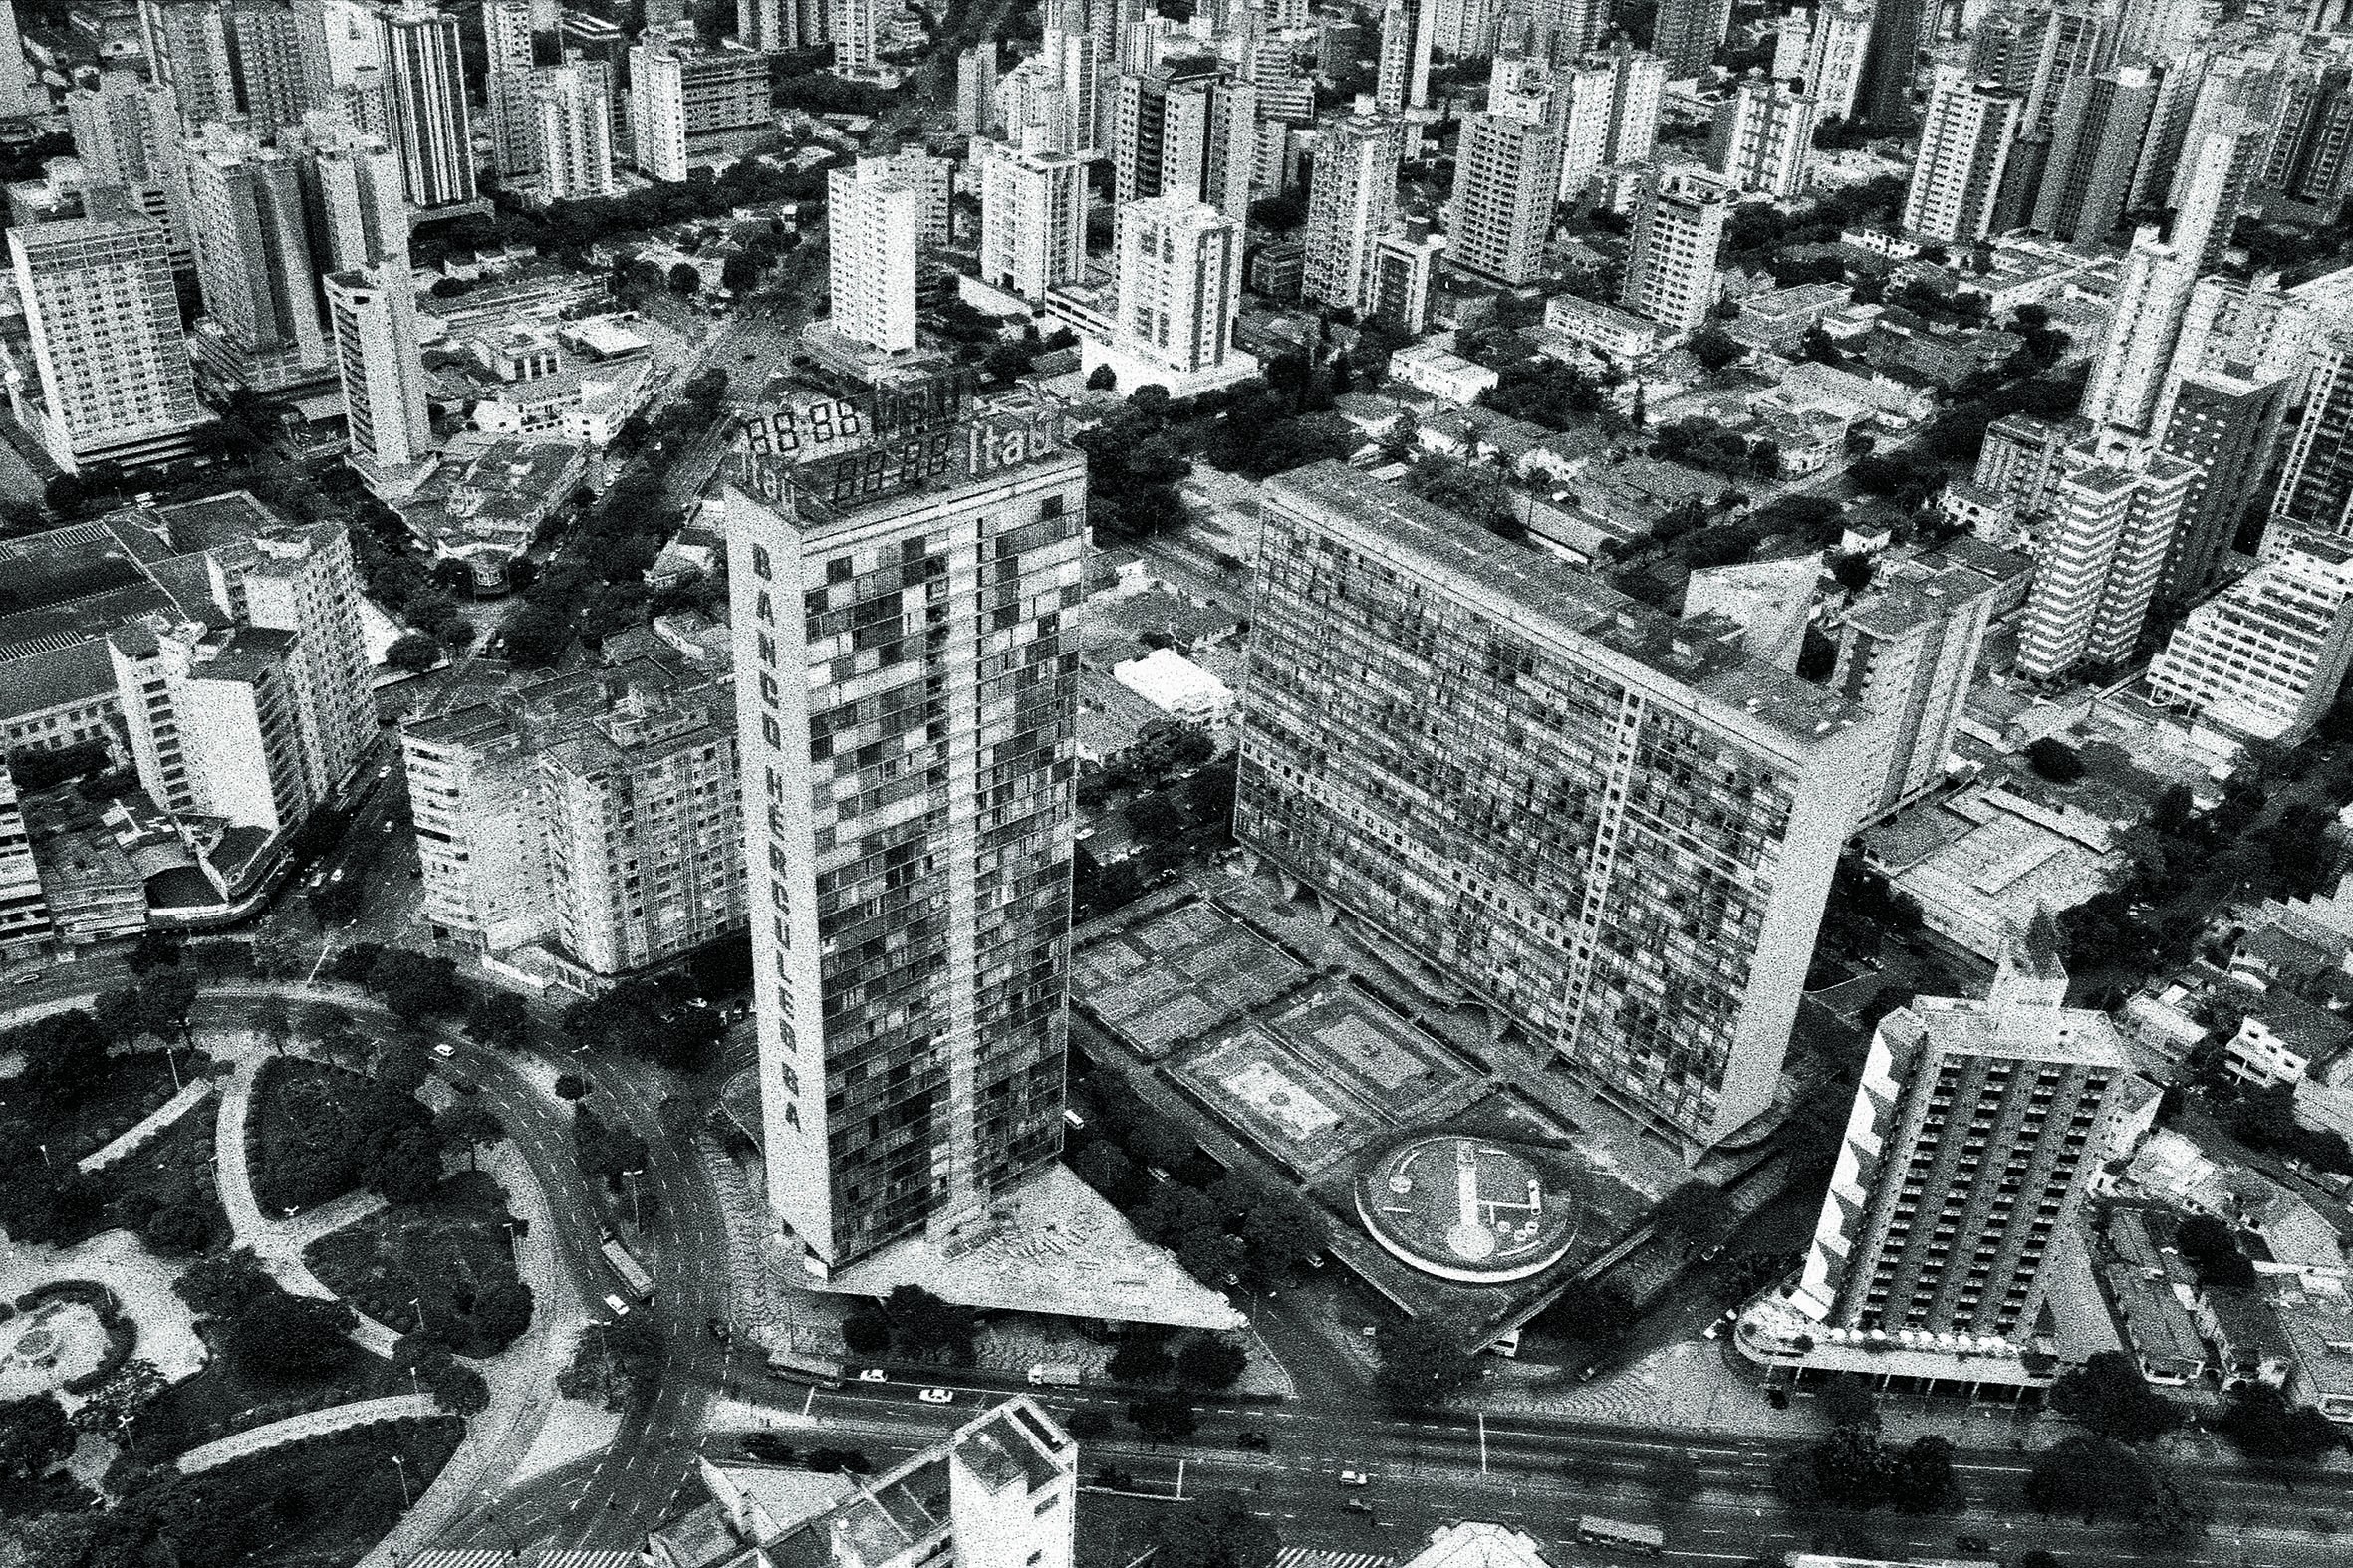 Livro de arquitetura analisa os vazios urbanos de Belo Horizonte (Foto: Divulgação)